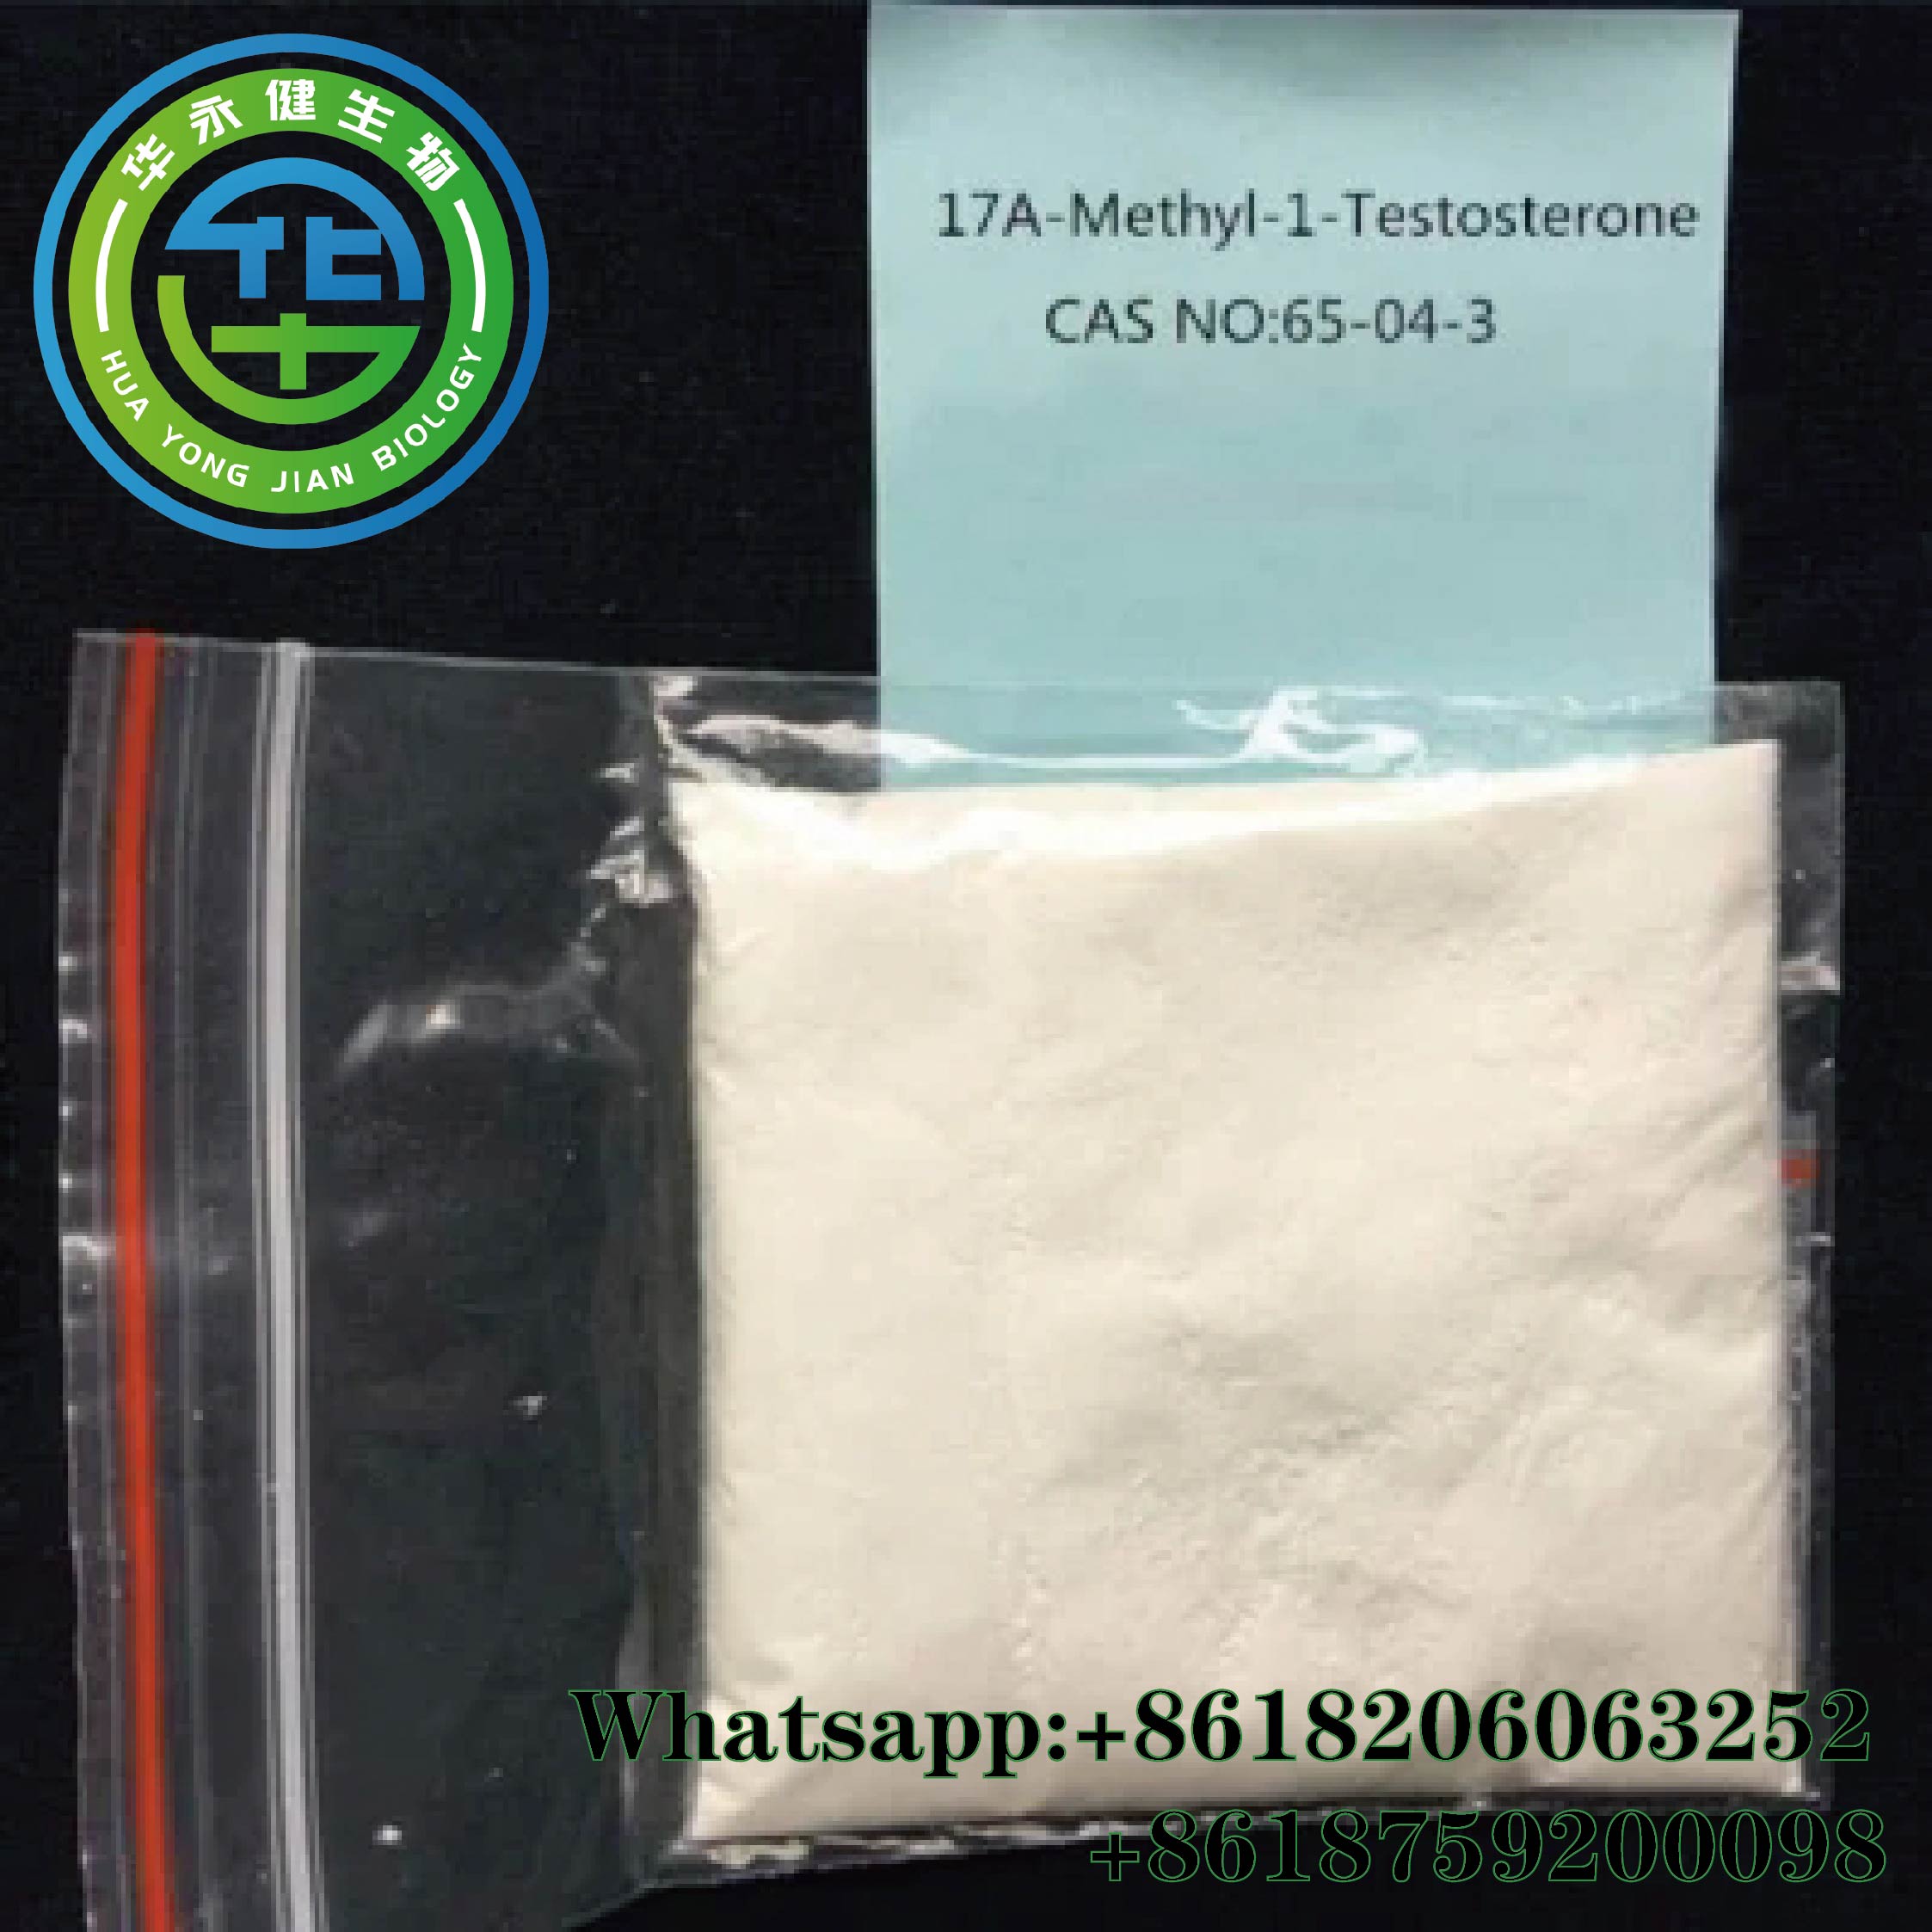 Methyltestosterone Testosterone Sex Hormone Raw Powder White Solid 162 - 168 °C Melting Point